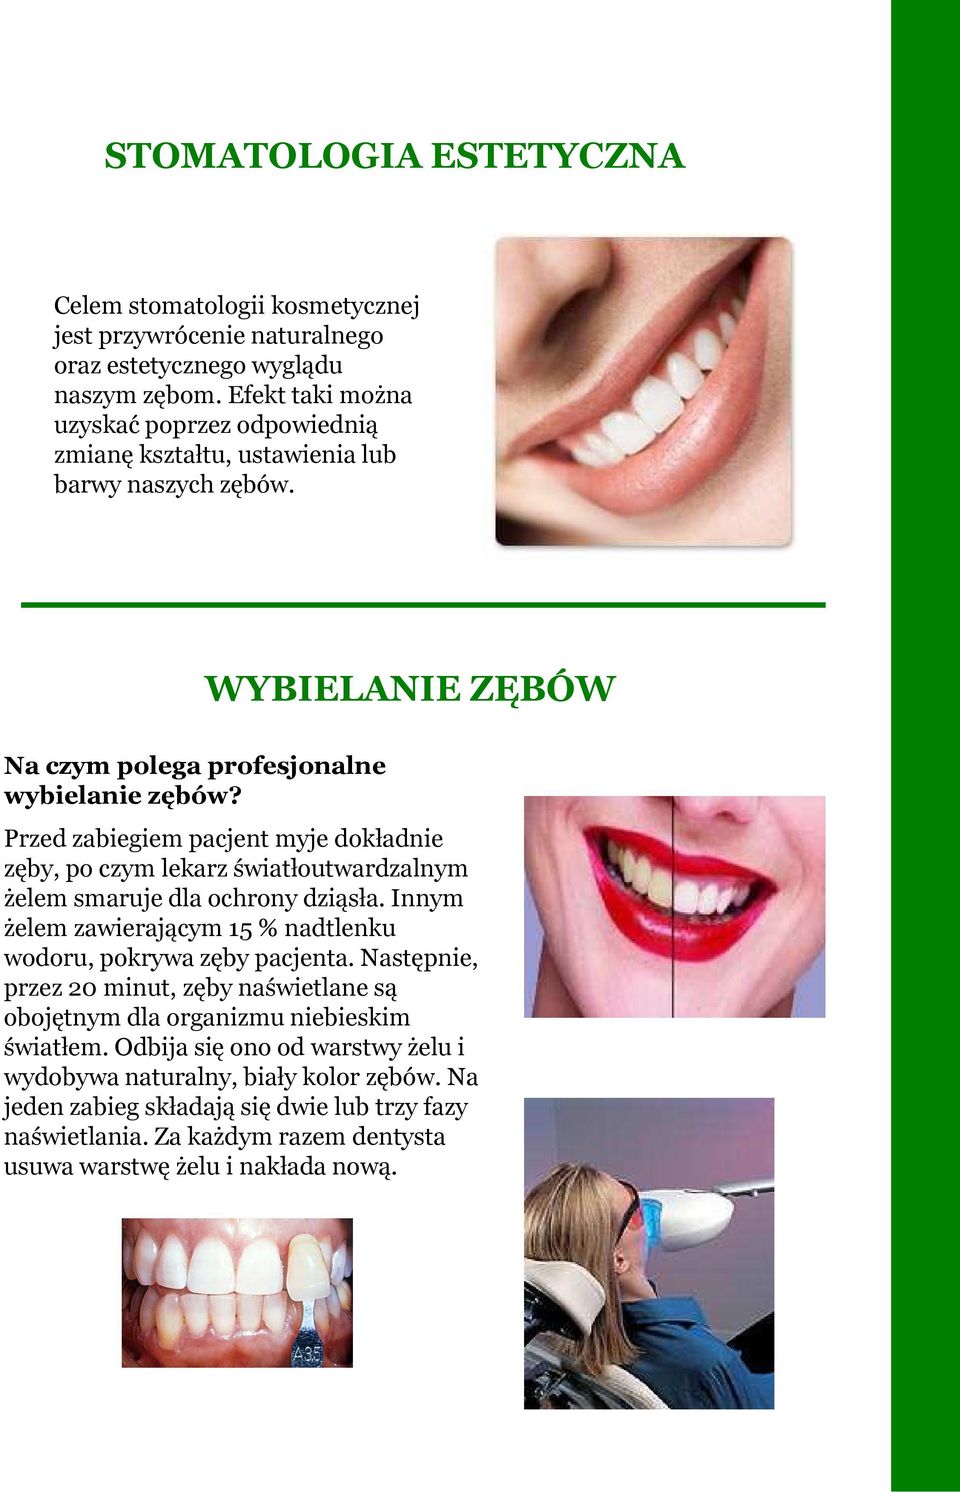 WYBIELANIE ZĘBÓW Przed zabiegiem pacjent myje dokładnie zęby, po czym lekarz światłoutwardzalnym żelem smaruje dla ochrony dziąsła.